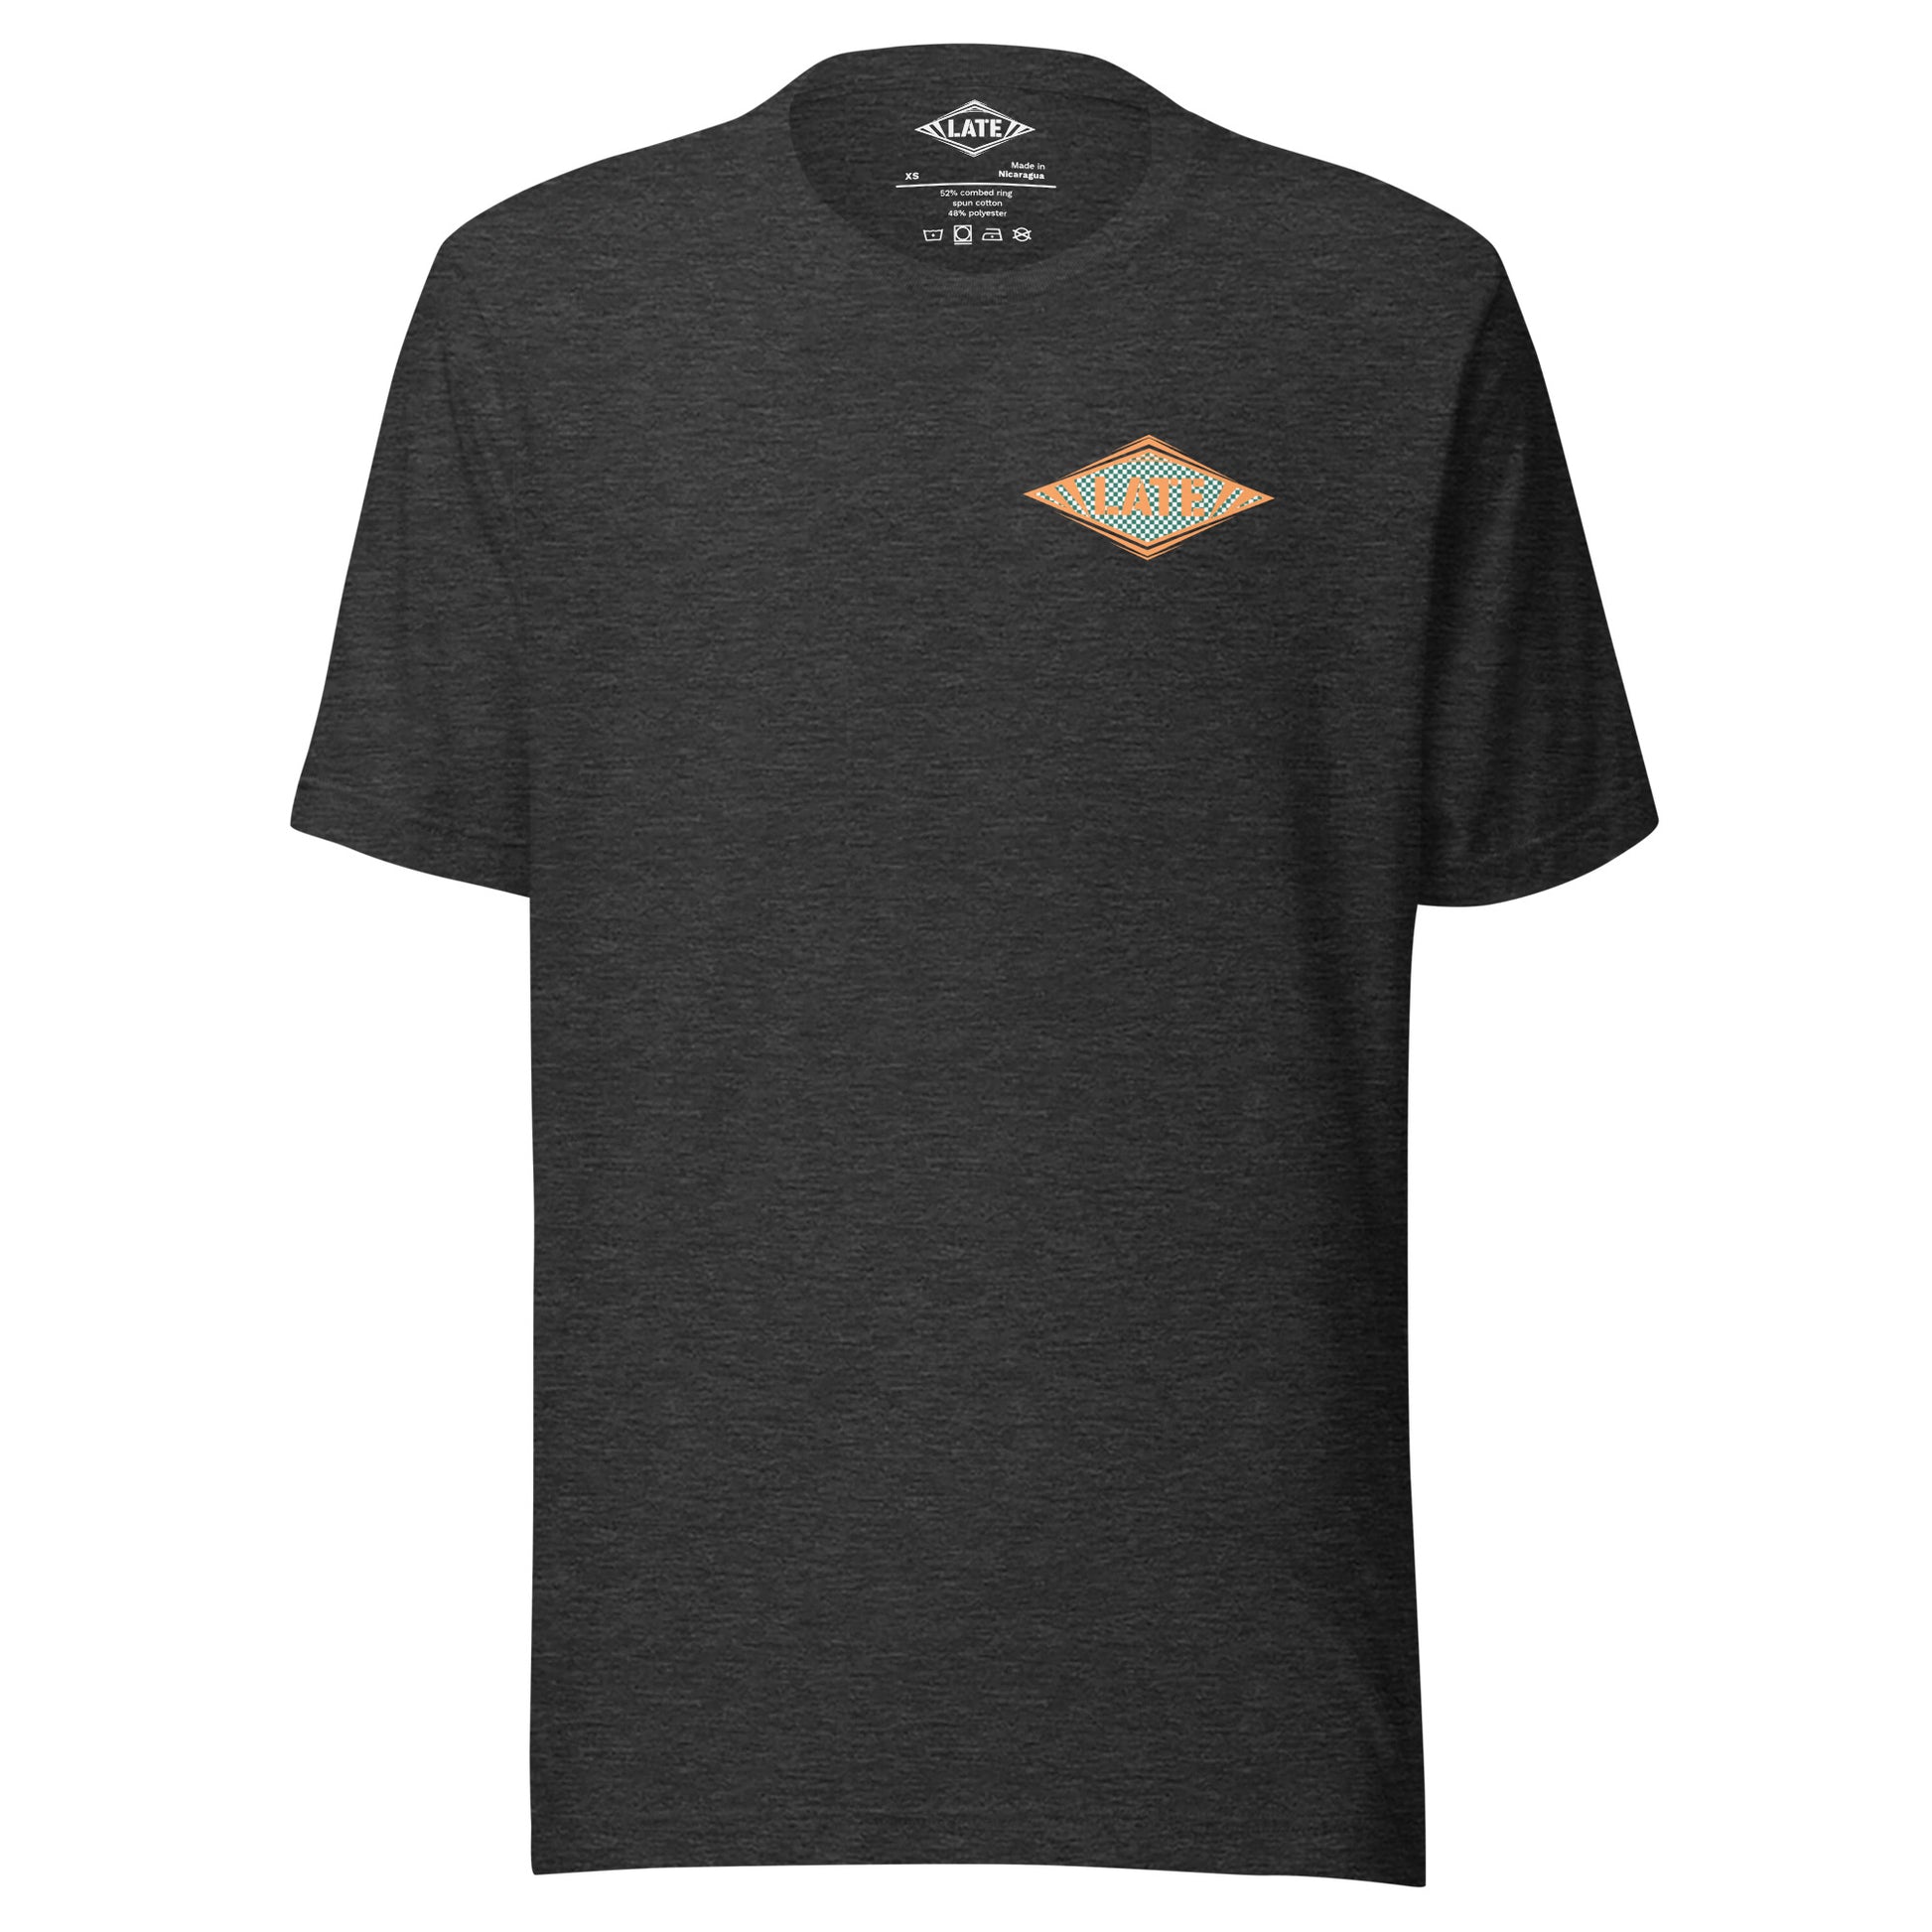 T-Shirt Shred It skateboard style Vans logo Late à carreaux. T-Shirt unisex de face couleur gris foncé